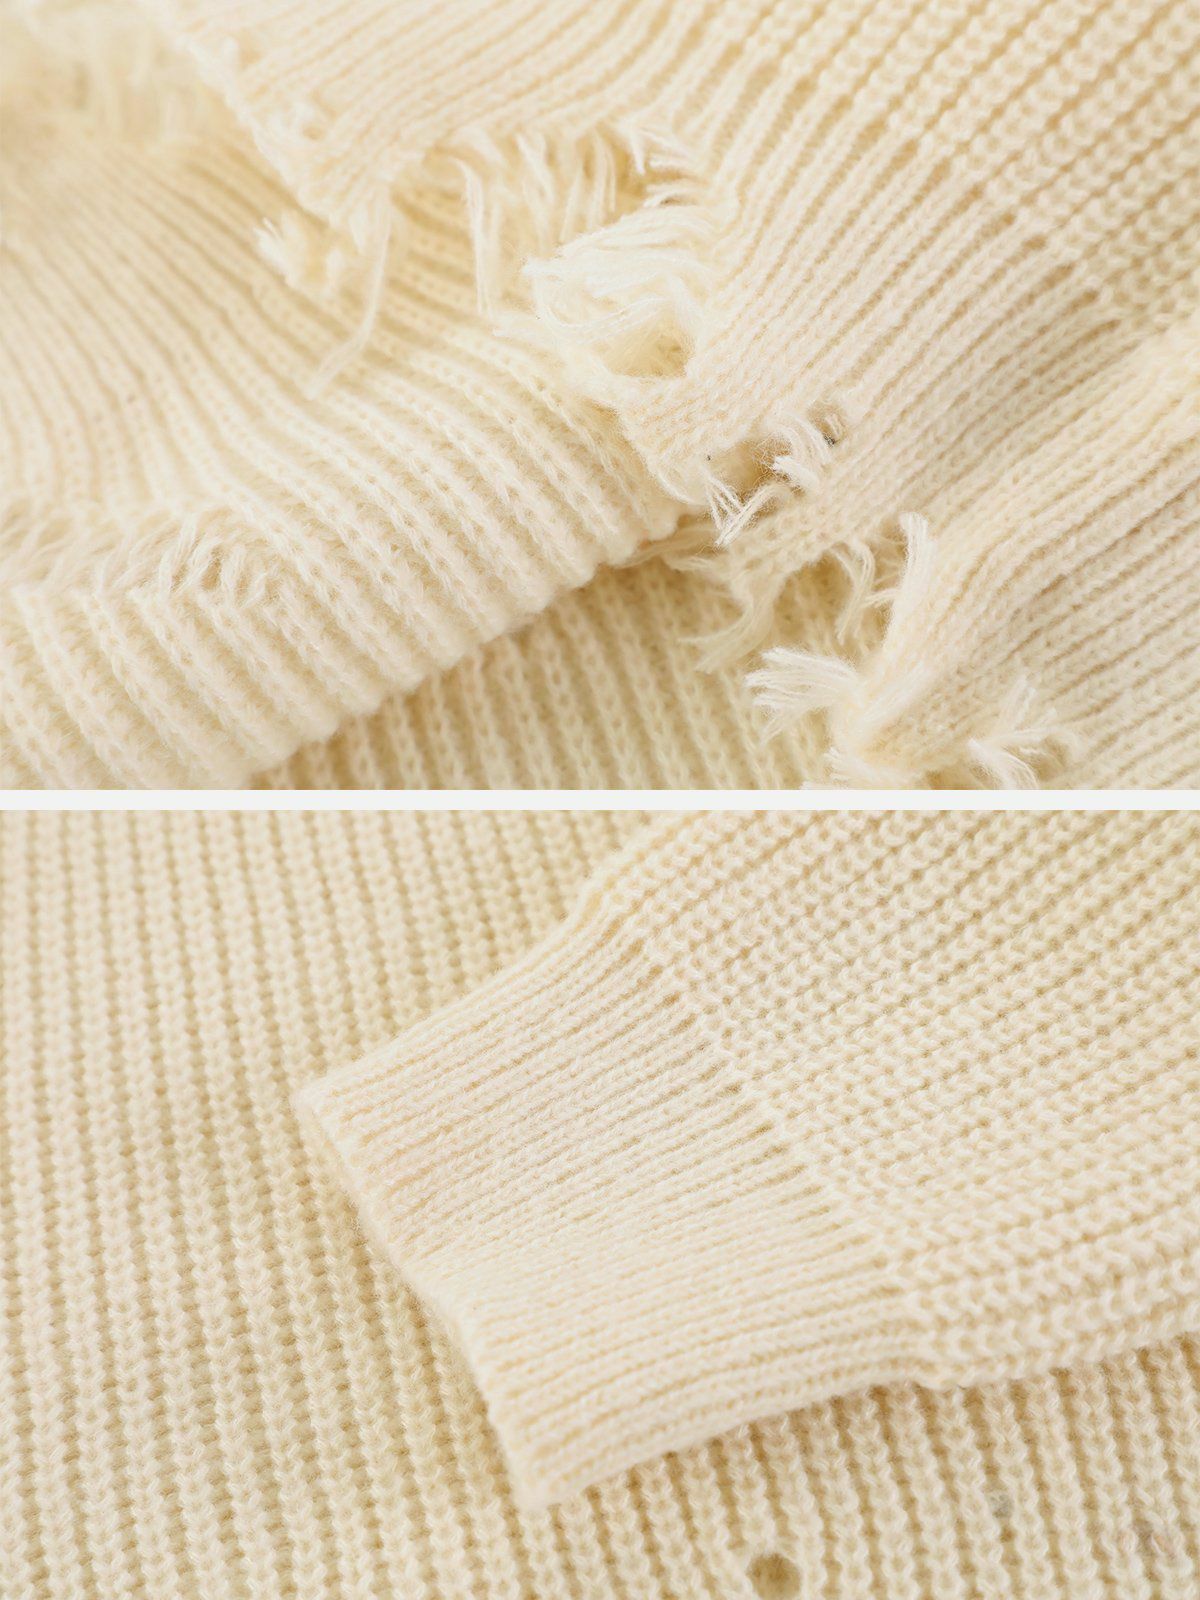 patchwork twist knit sweater edgy y2k streetwear 5499